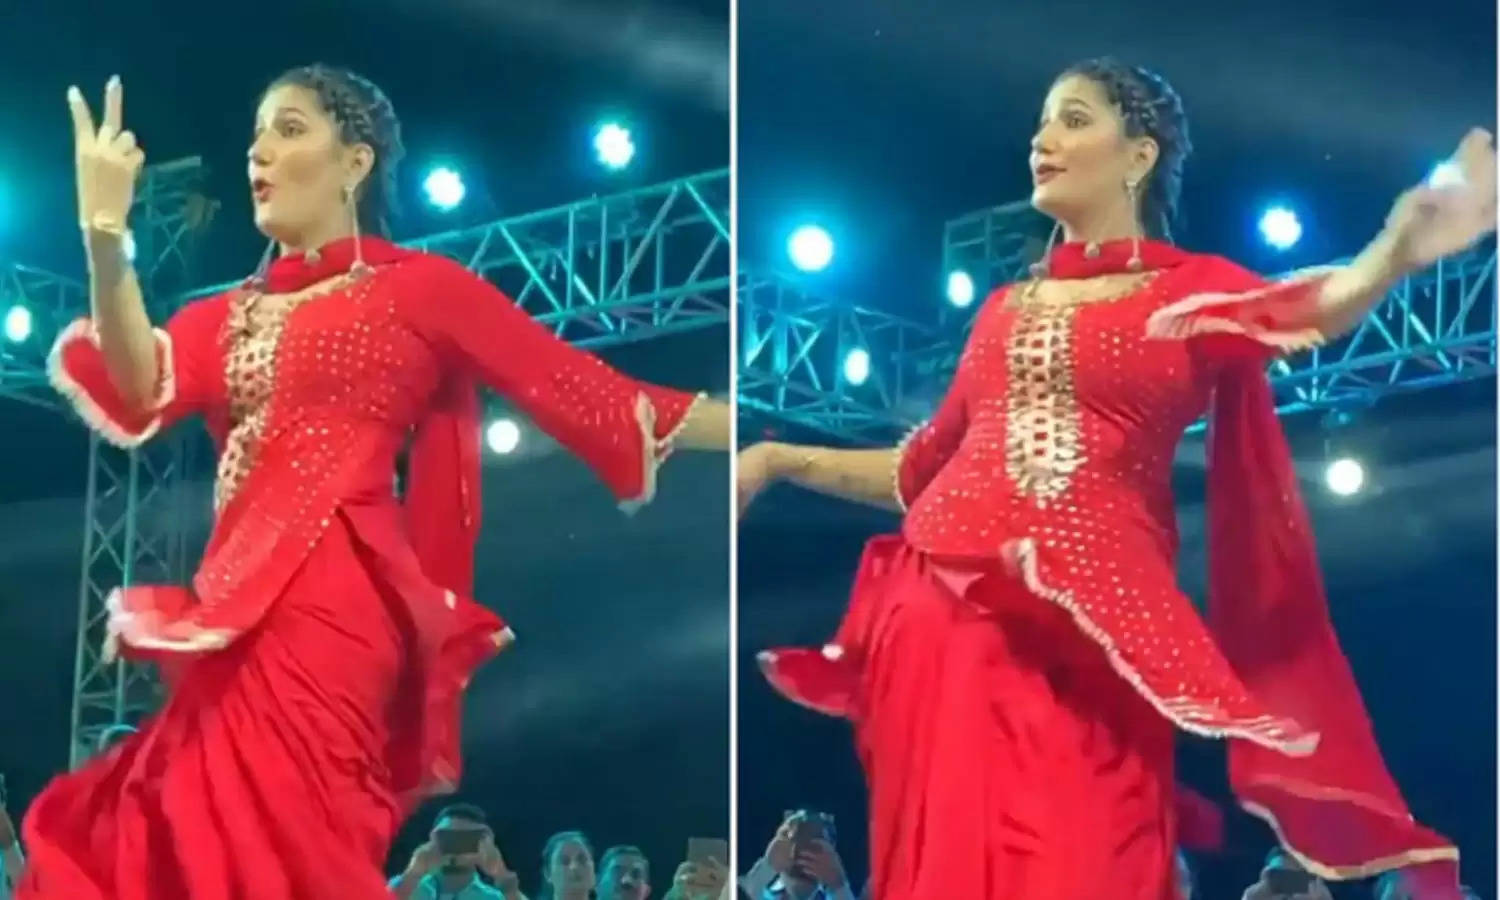 Sapna chaudhary ने स्टेज पर डांस करते दिखाया ऐसा गज़ब देसी अंदाज, भीड़ रोकना हुआ मुश्किल